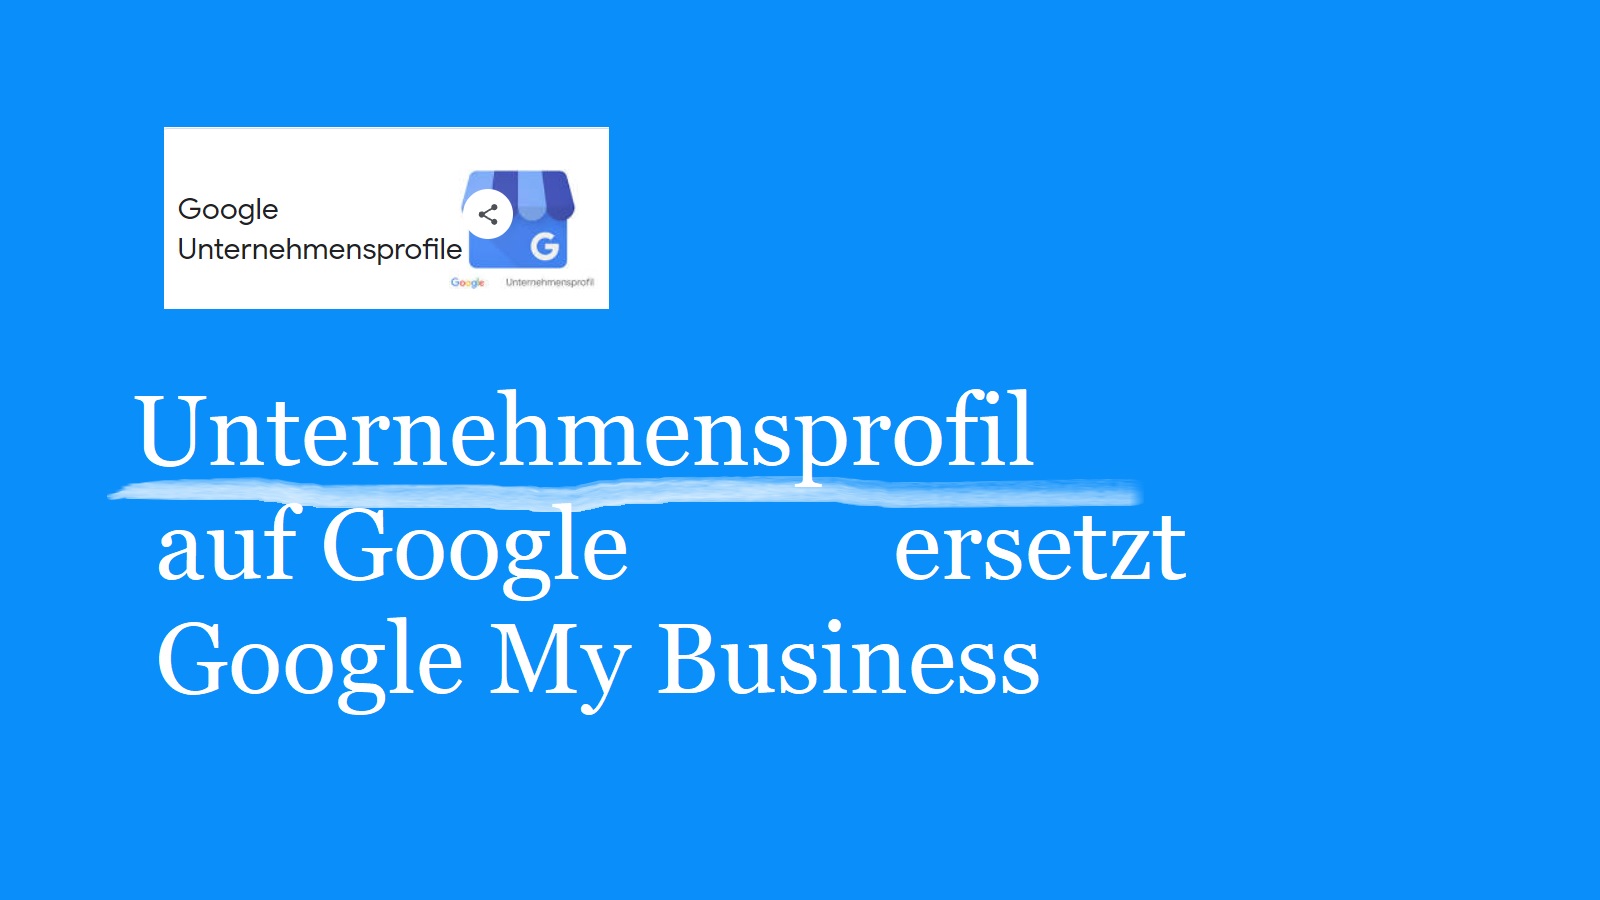 Unternehmensprofil auf Google ersetzt Google My Business